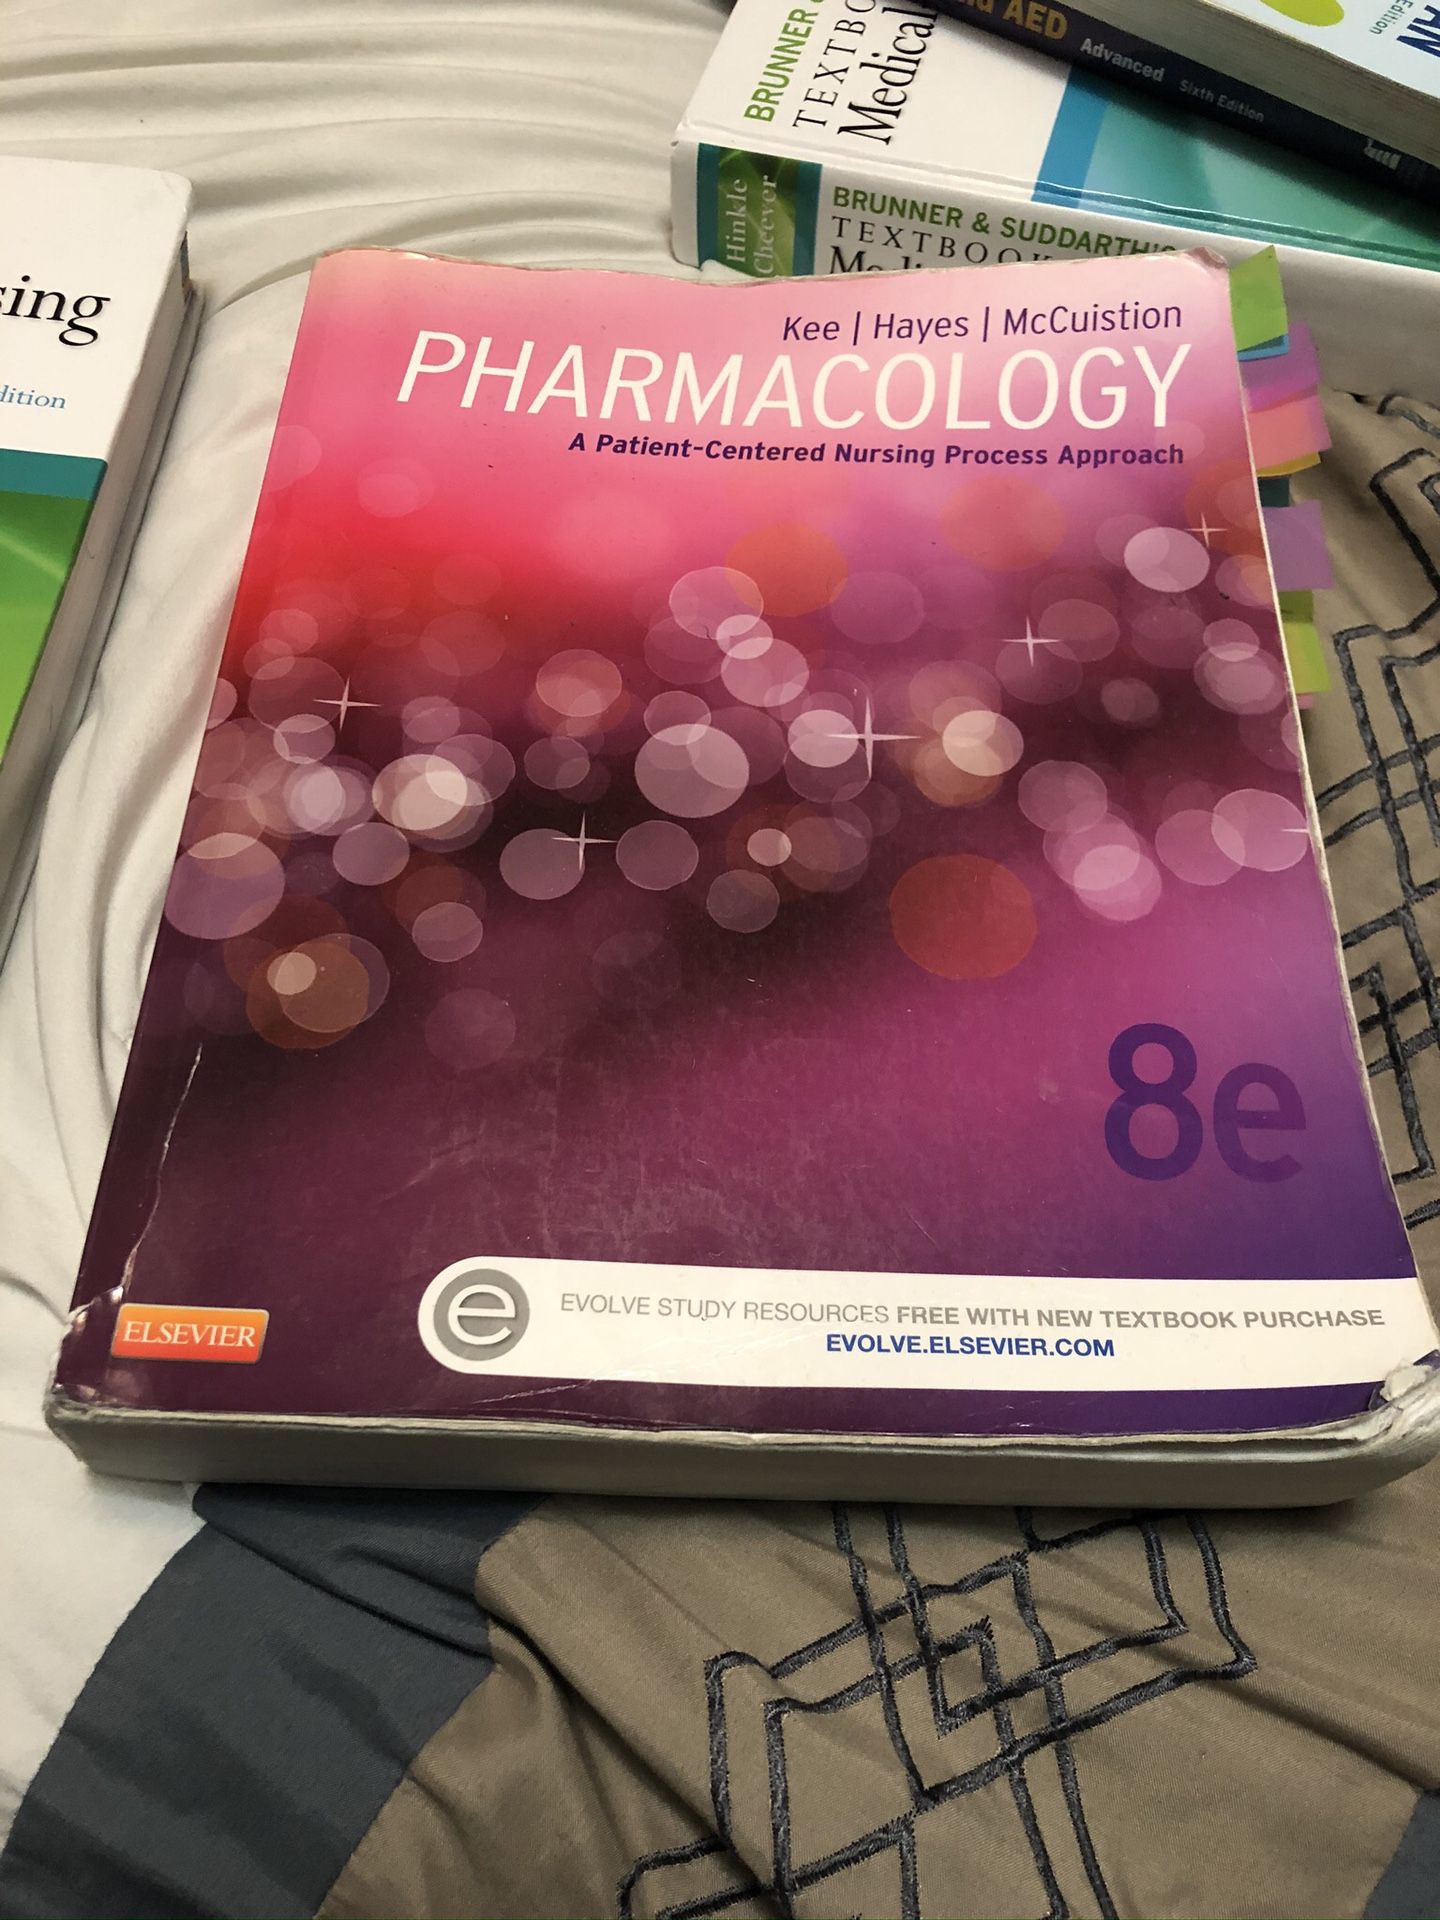 Nursing pharmacology book